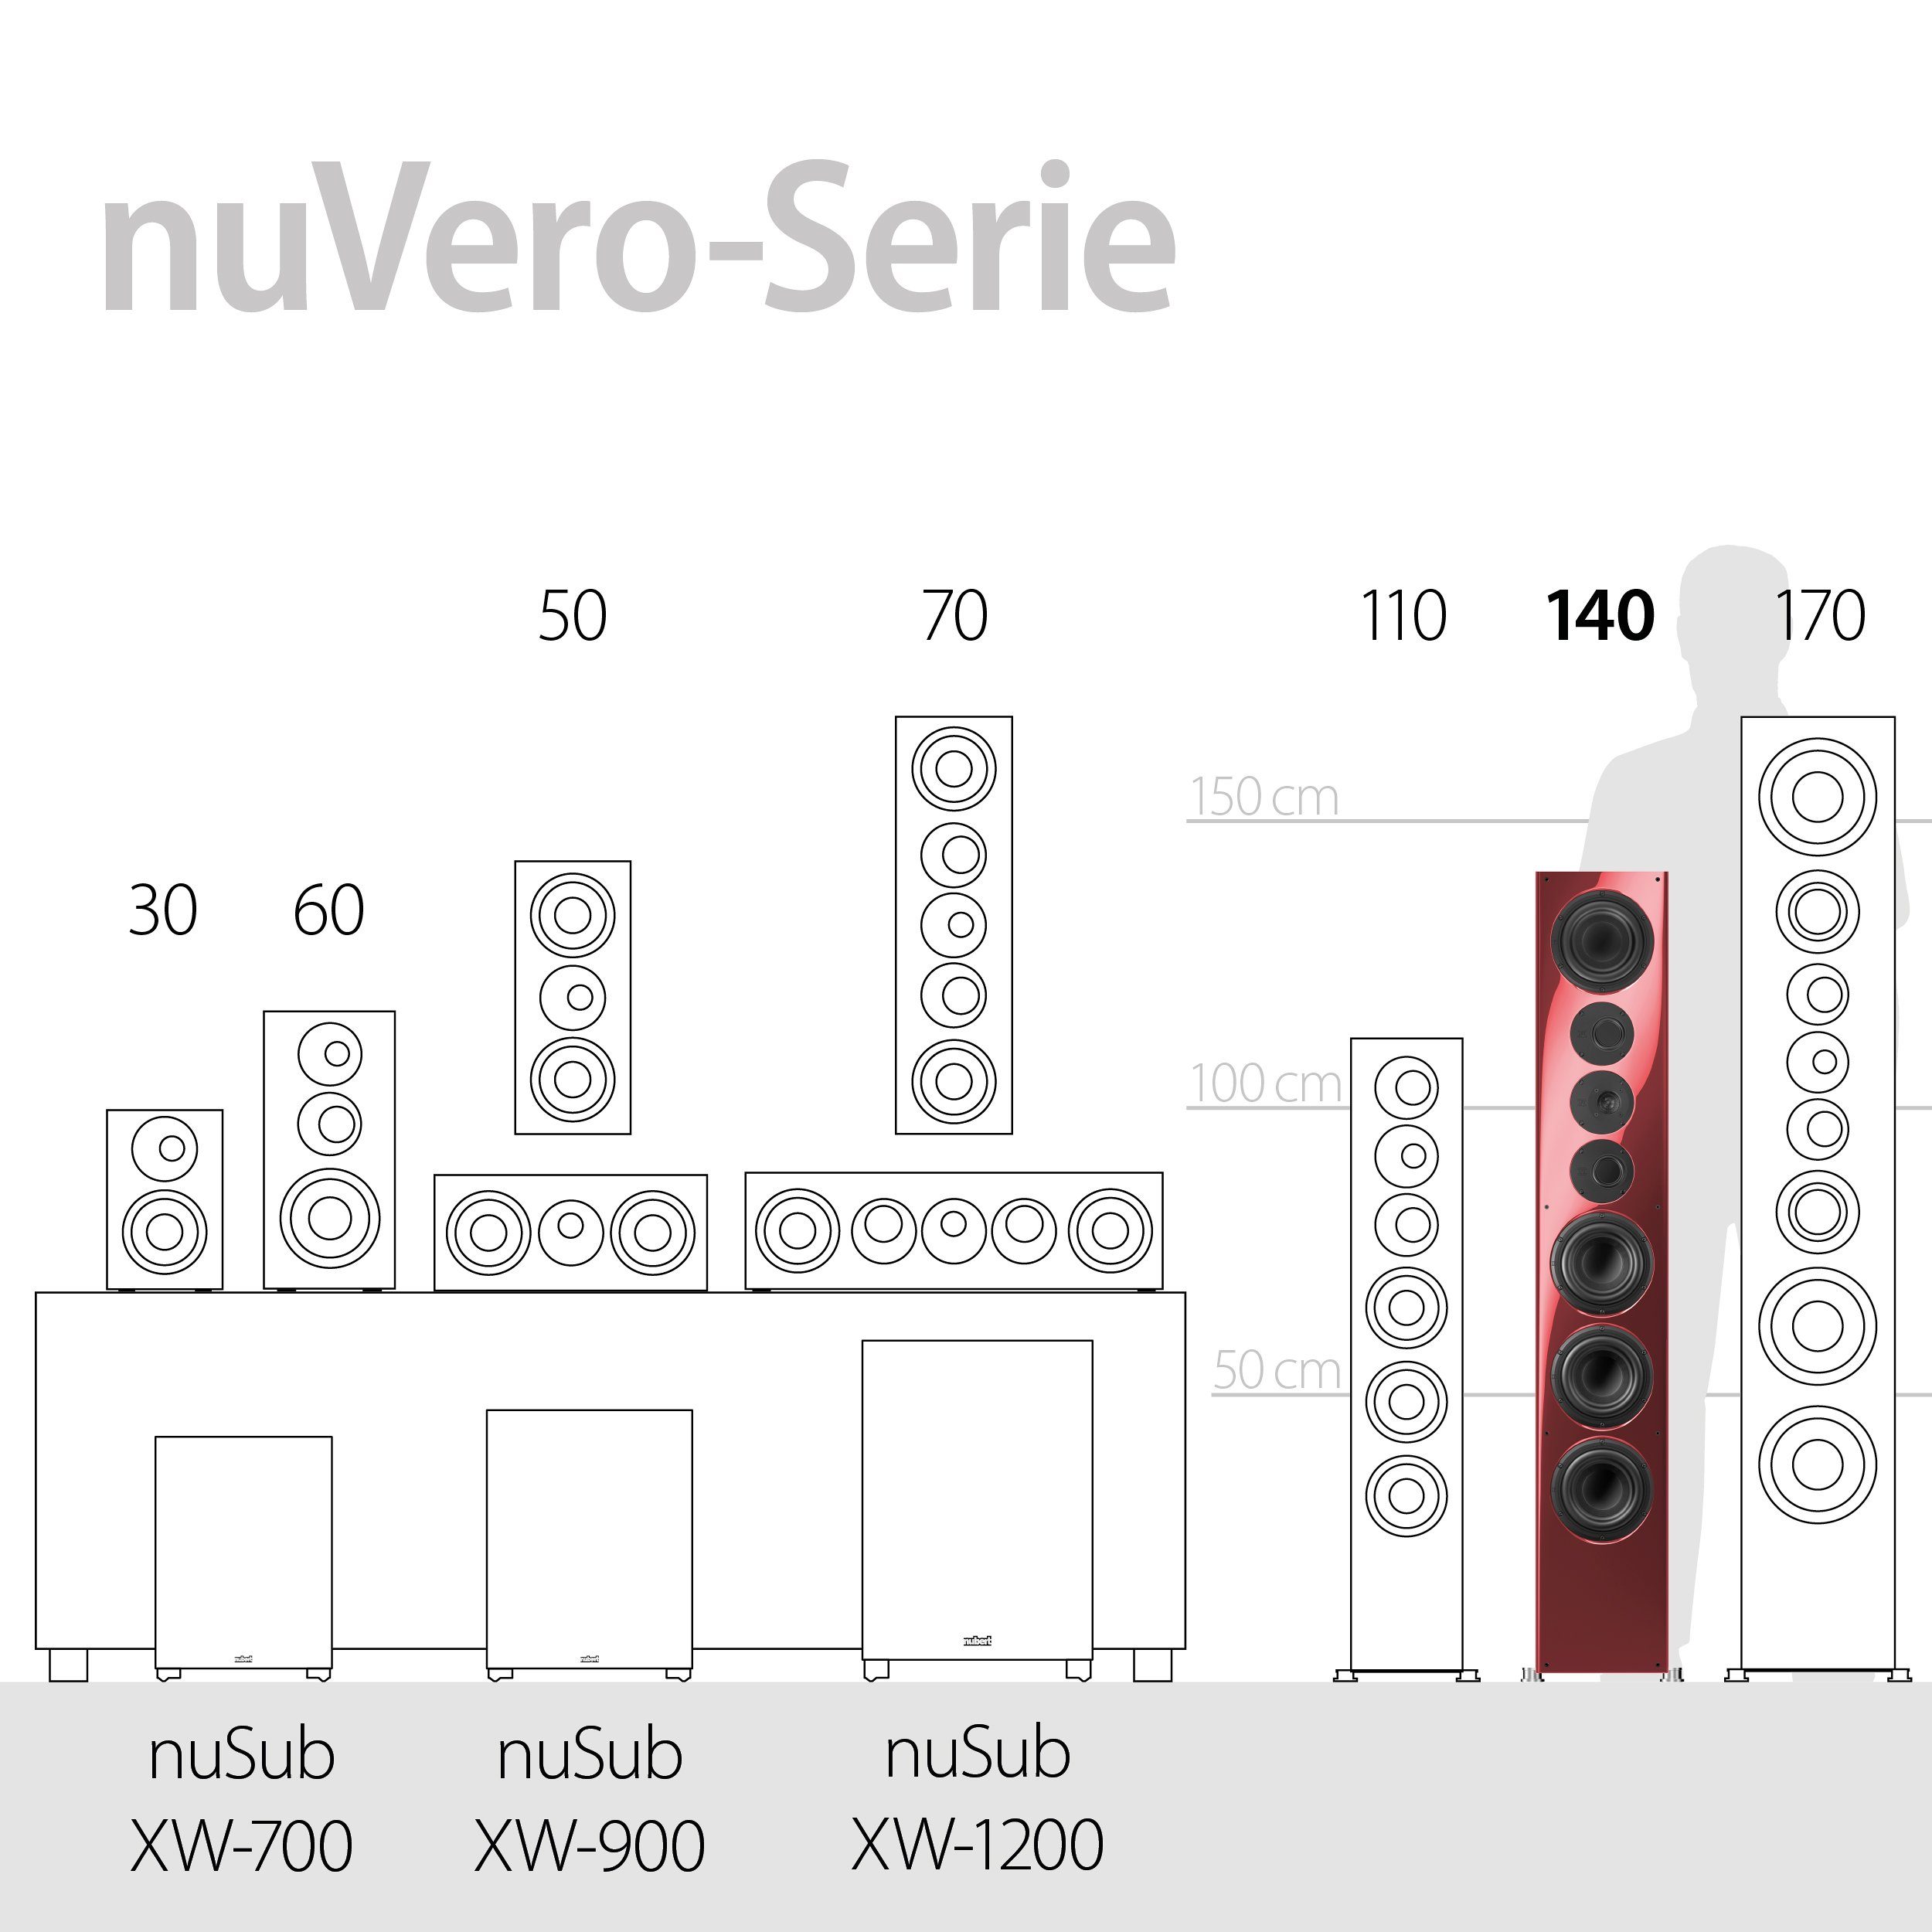 Rubinrot (600 nuVero Nubert Stand-Lautsprecher 140 W)